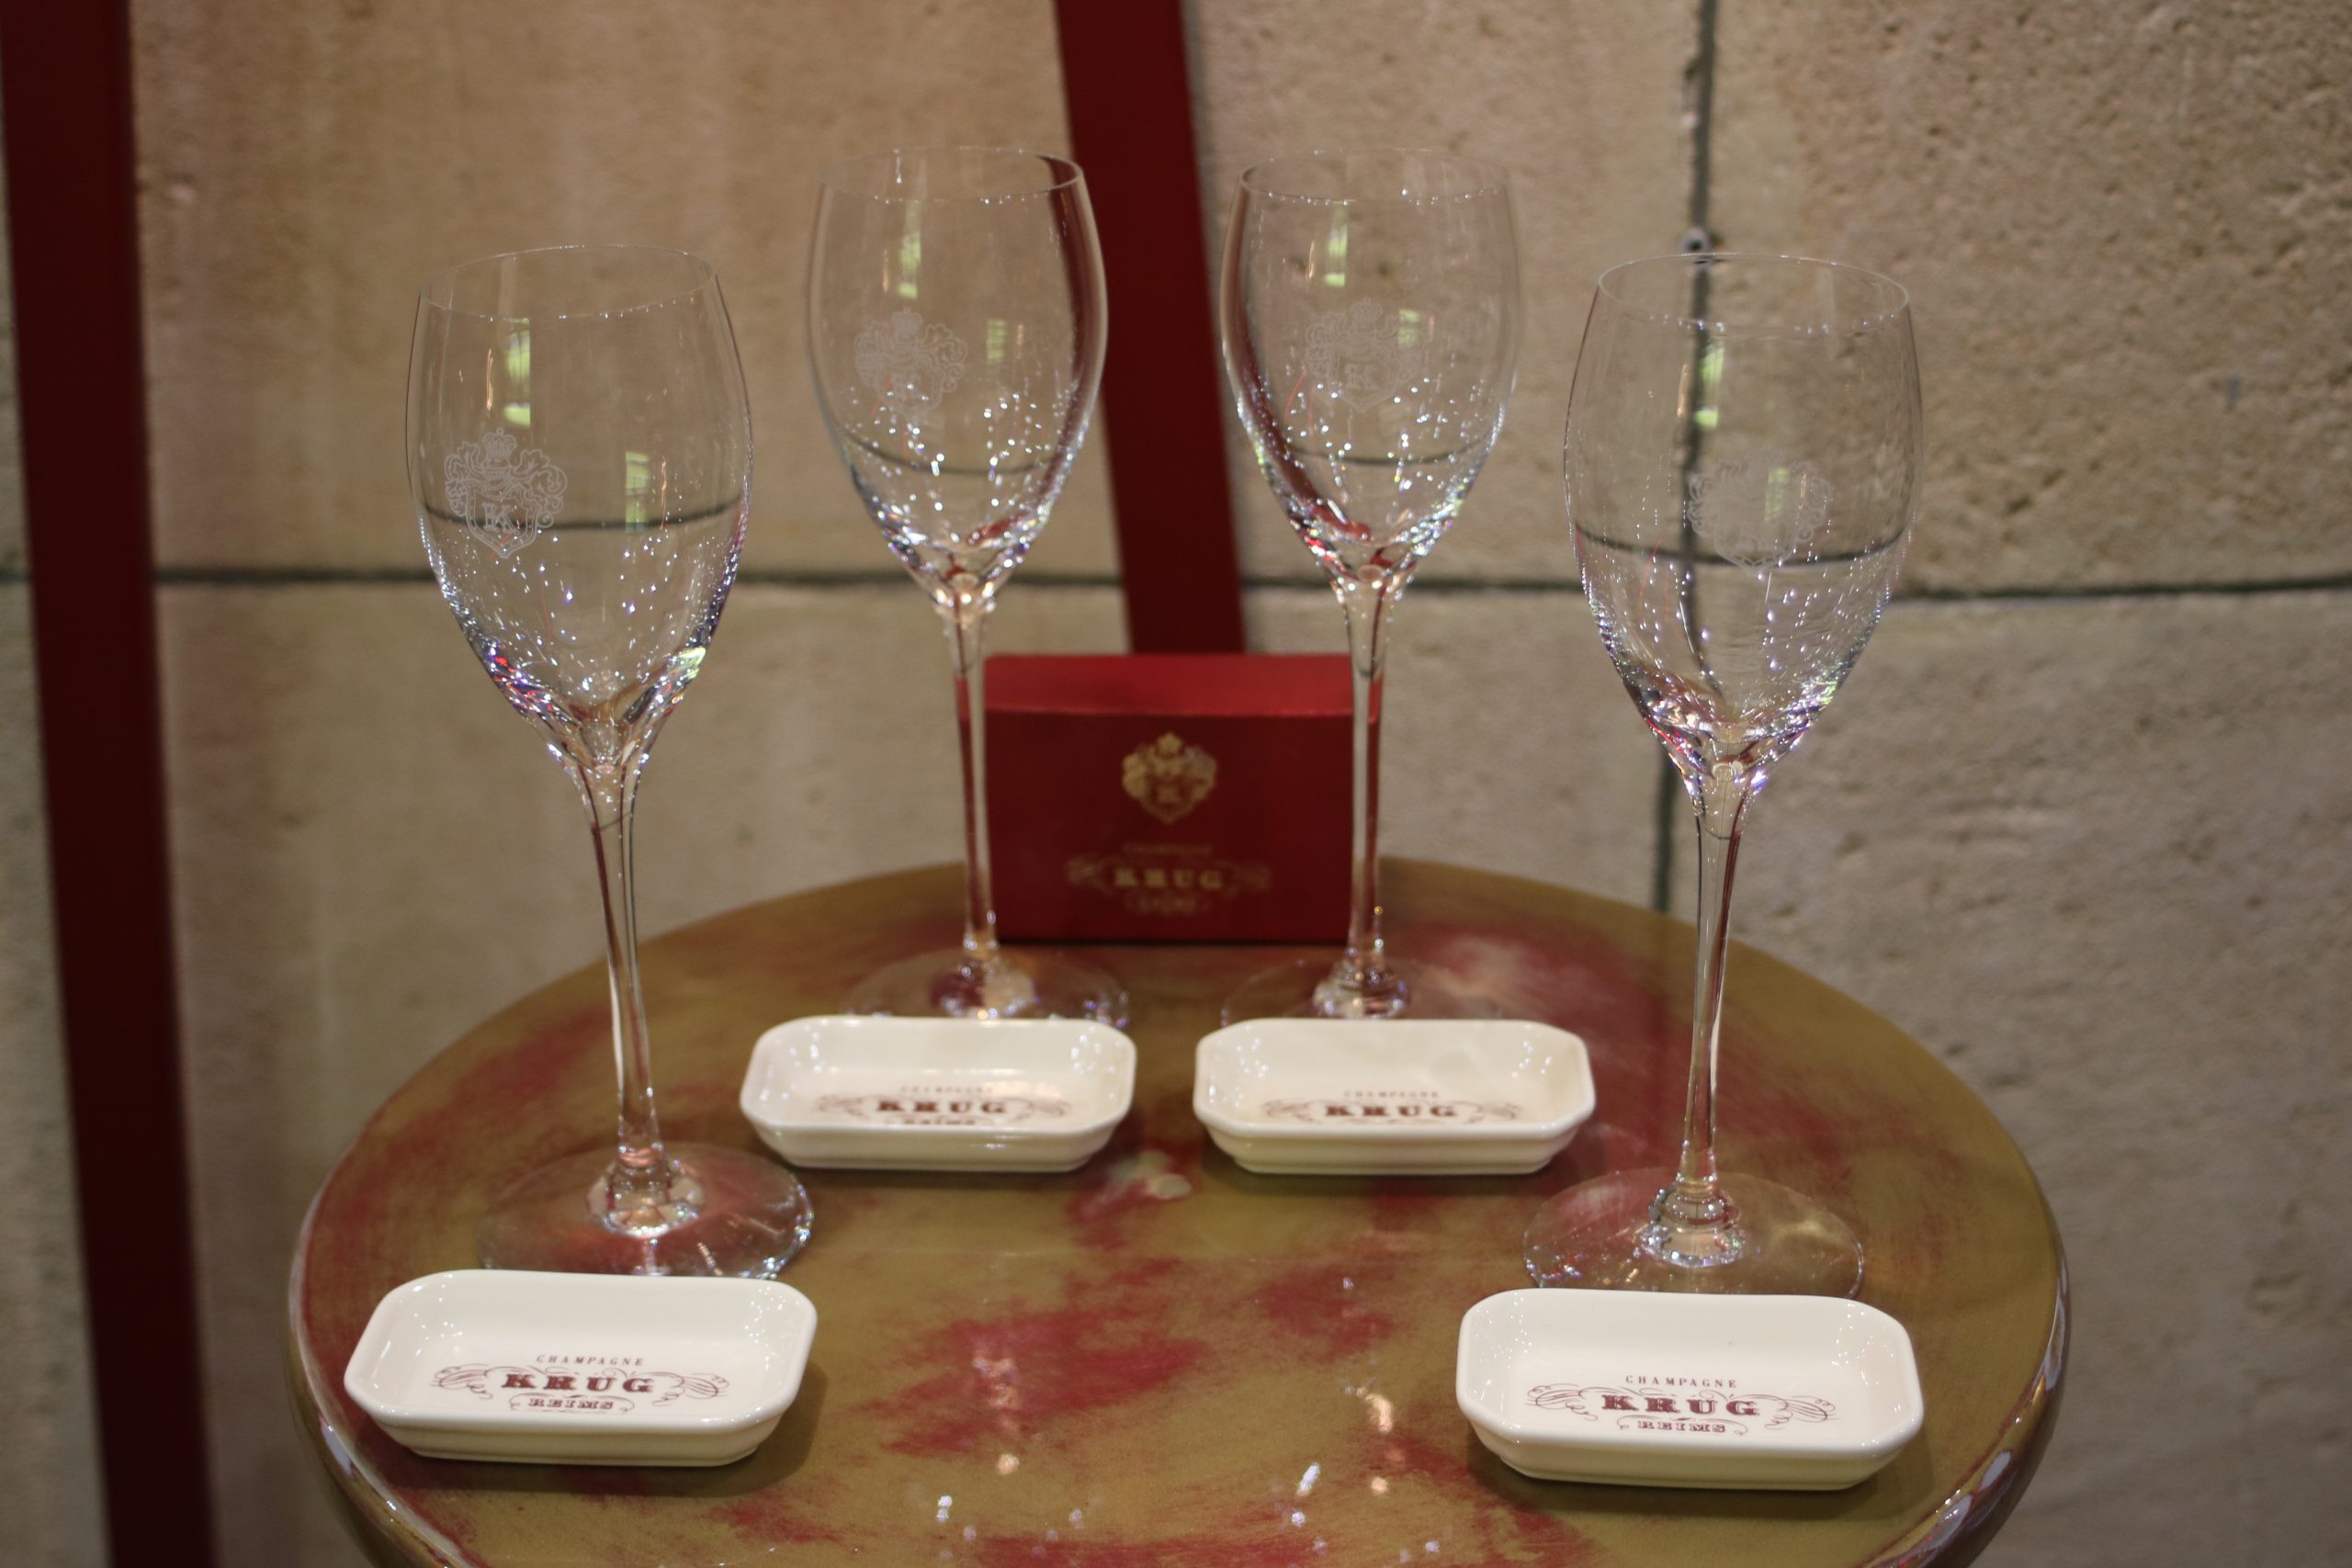 ELADVA – KRUG Champagne ajándék szett – 4 db kristálypohár 4 db porcelán tálka – 114.400.-Ft